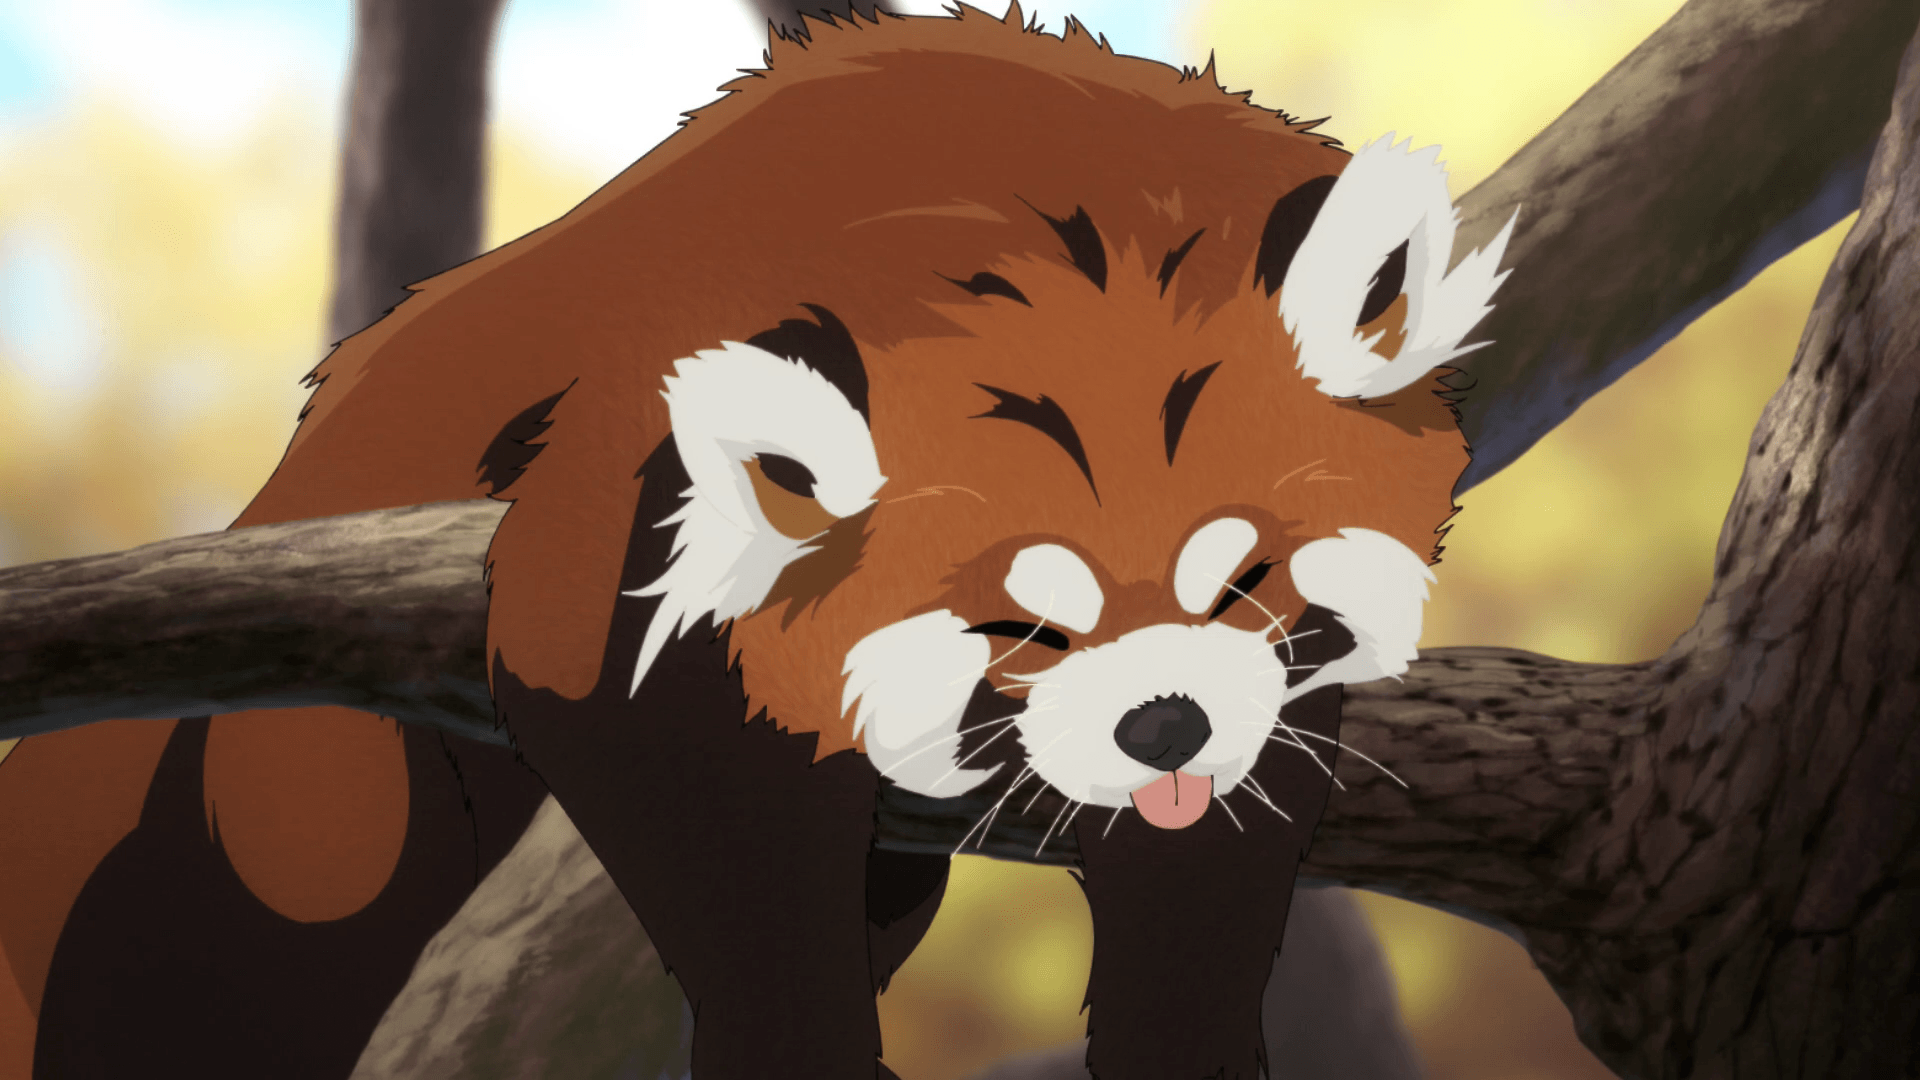 Red Panda Anime Wallpaper On